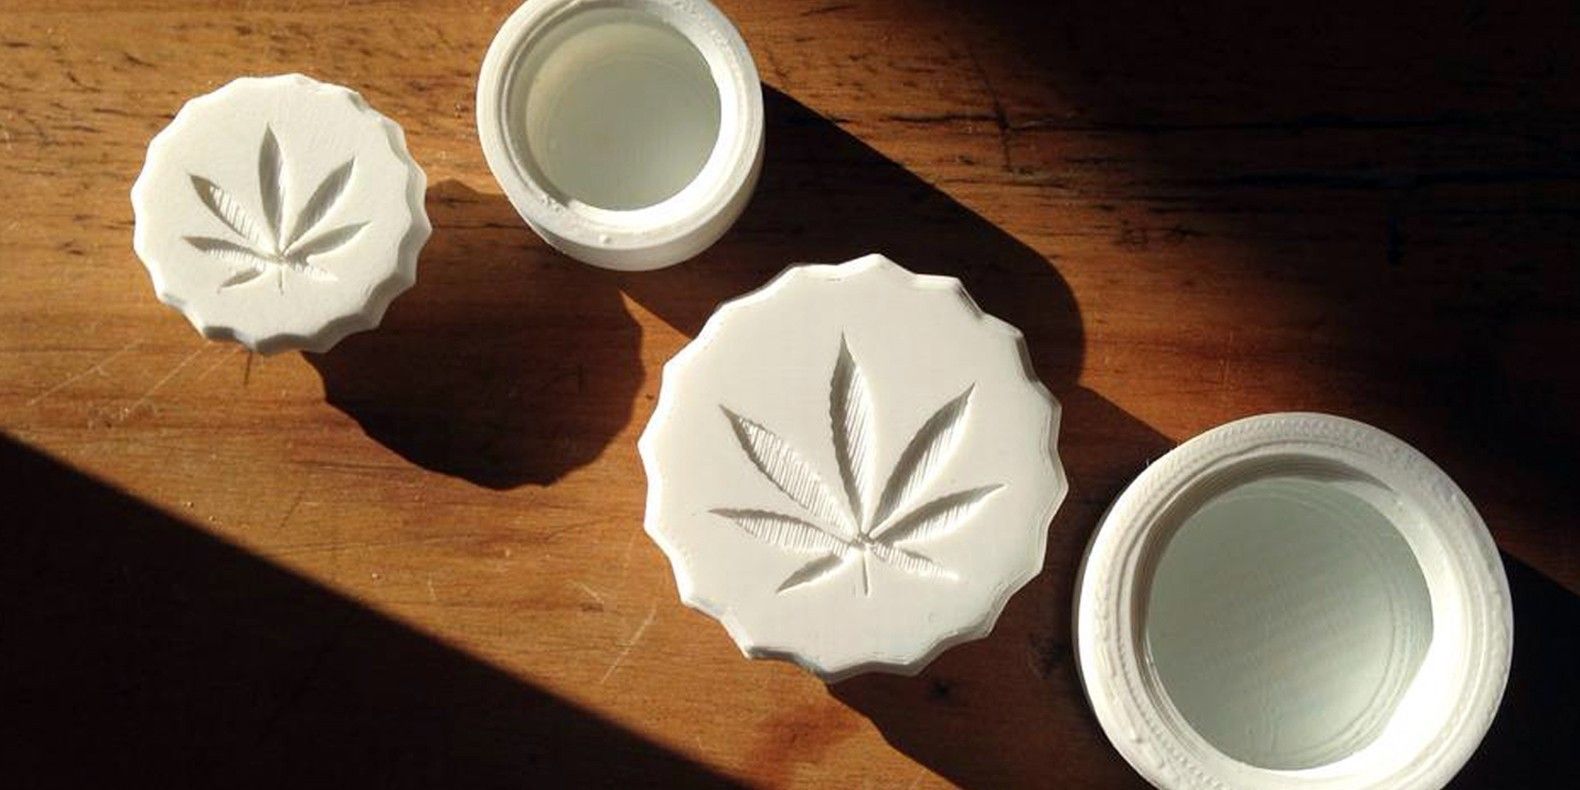 Retrouvez ici une sélection des meilleurs modèles 3D imprimables en 3D pour la consommation de cannabis